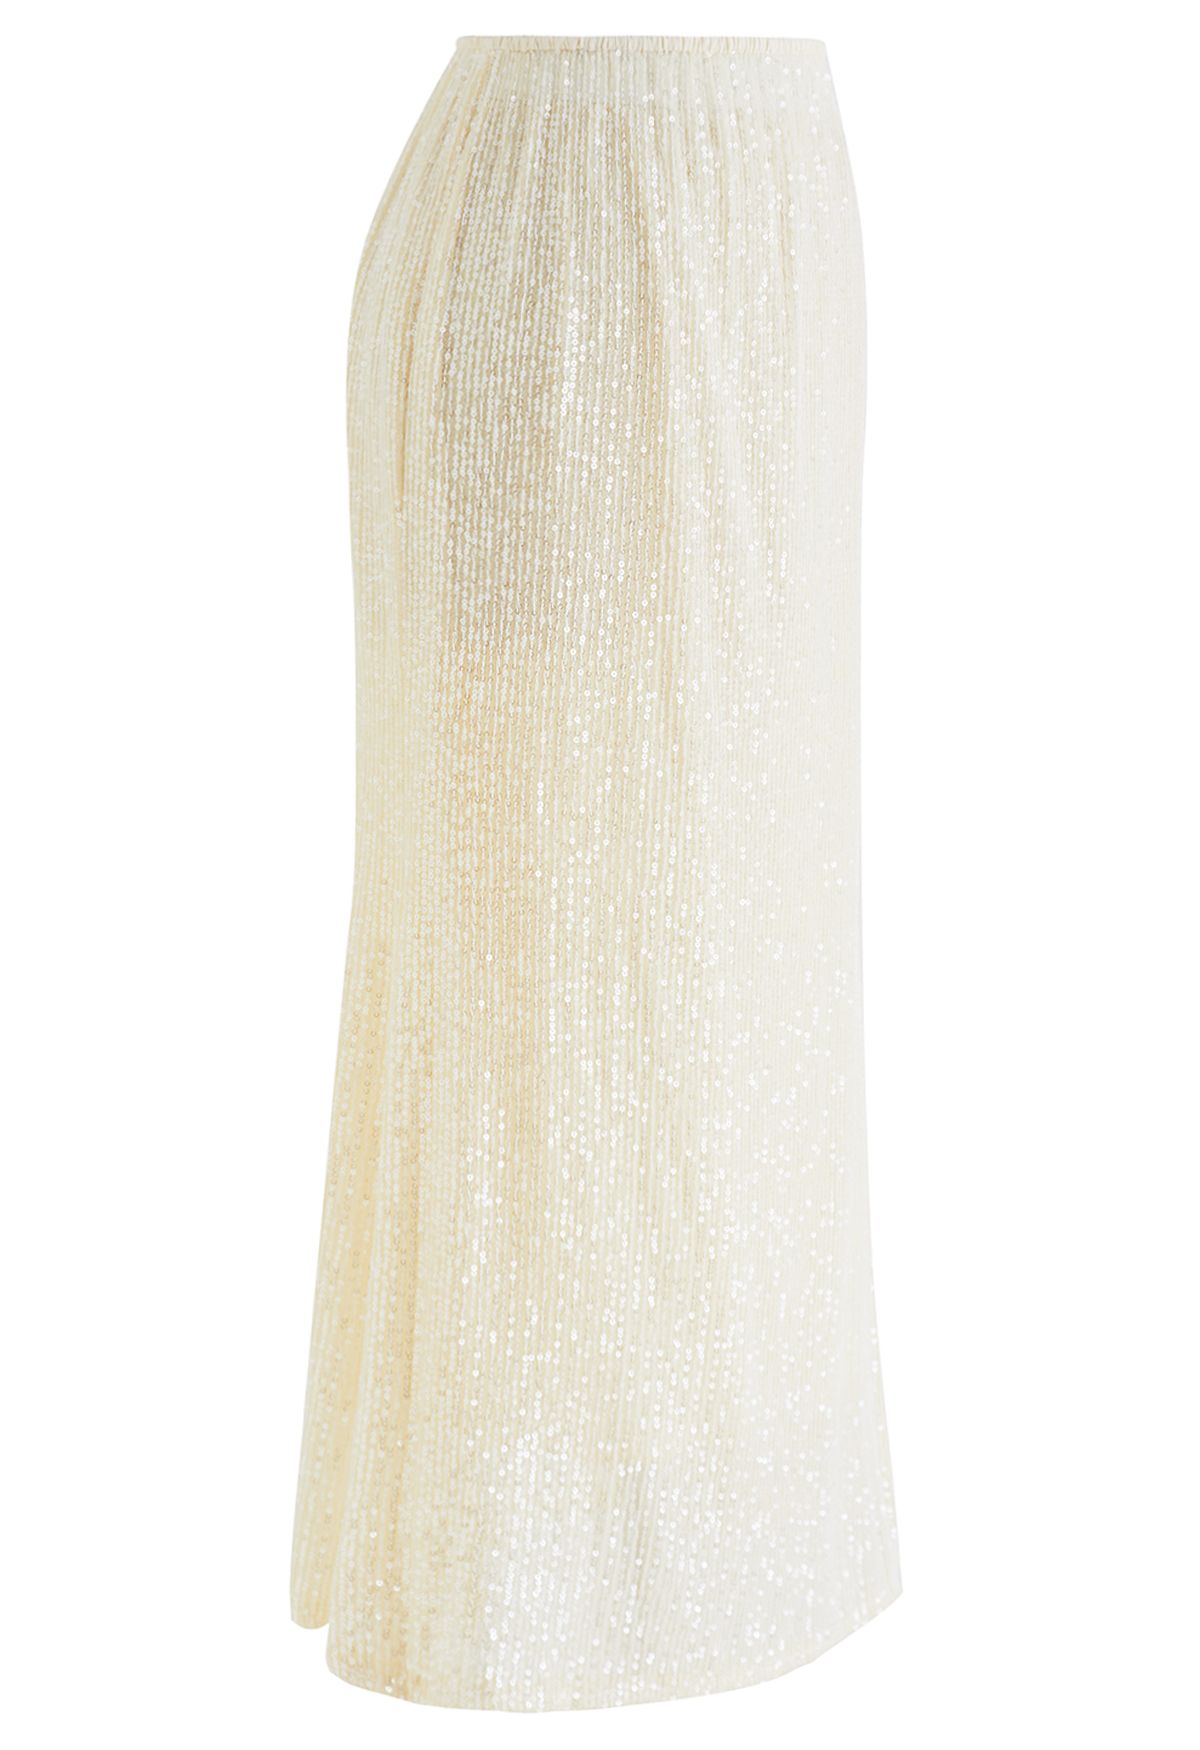 Falda de sirena con lentejuelas deslumbrantes en color crema